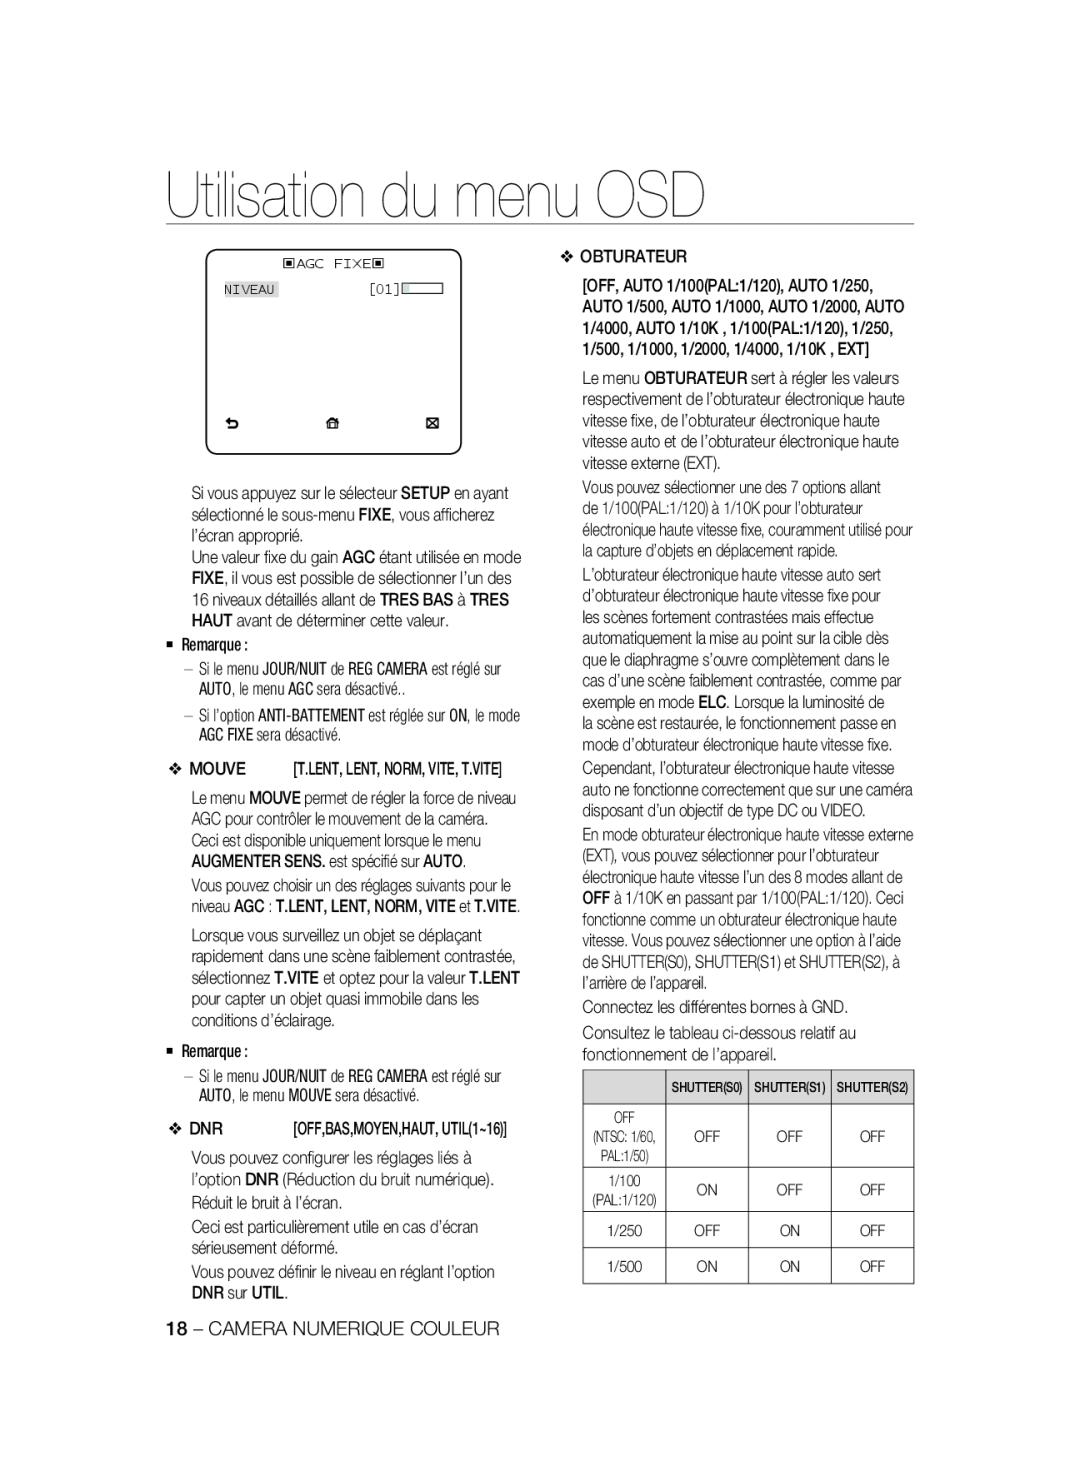 Samsung SCC-B2337P, SCC-B2037P manual Utilisation du menu OSD, ‹AGC FIXE‹ NIVEAU01 